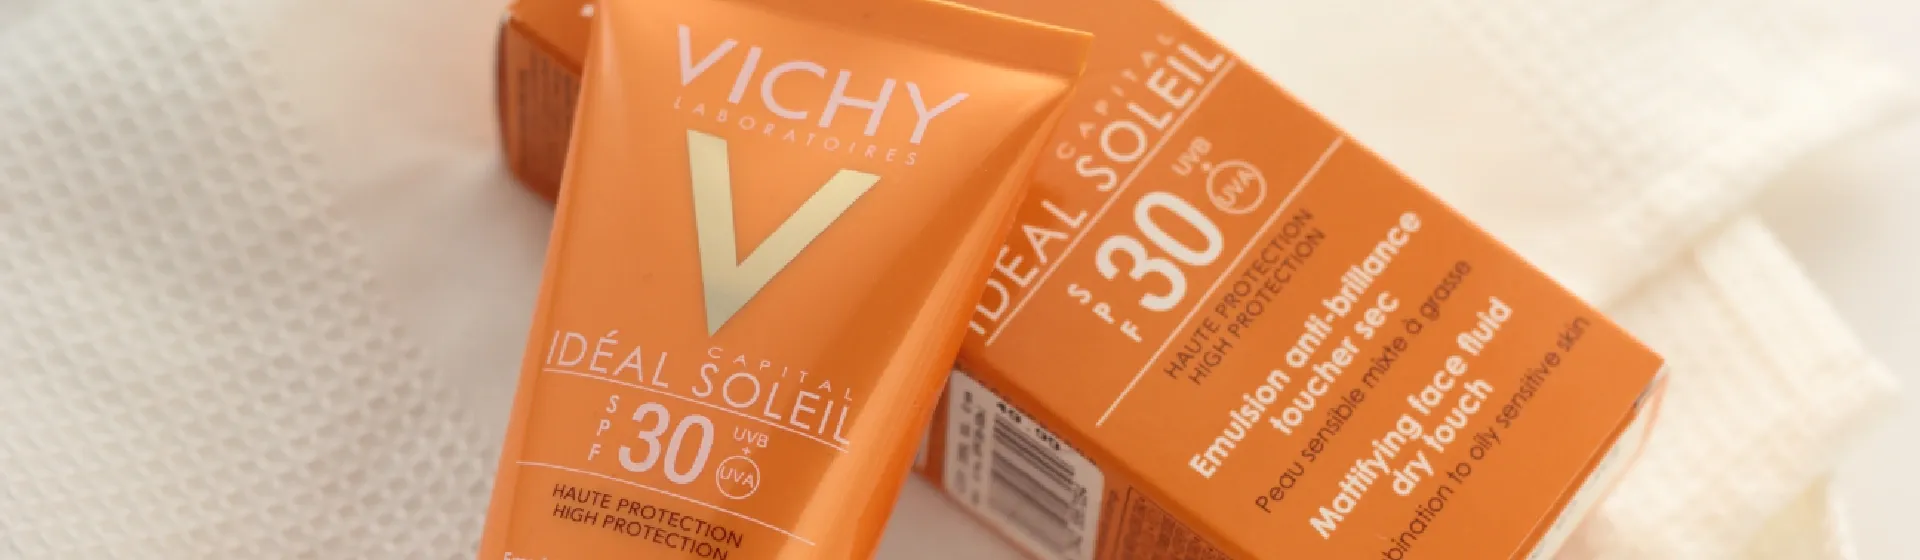 Protetor Solar Vichy: conheça os 7 melhores filtros solares da marca